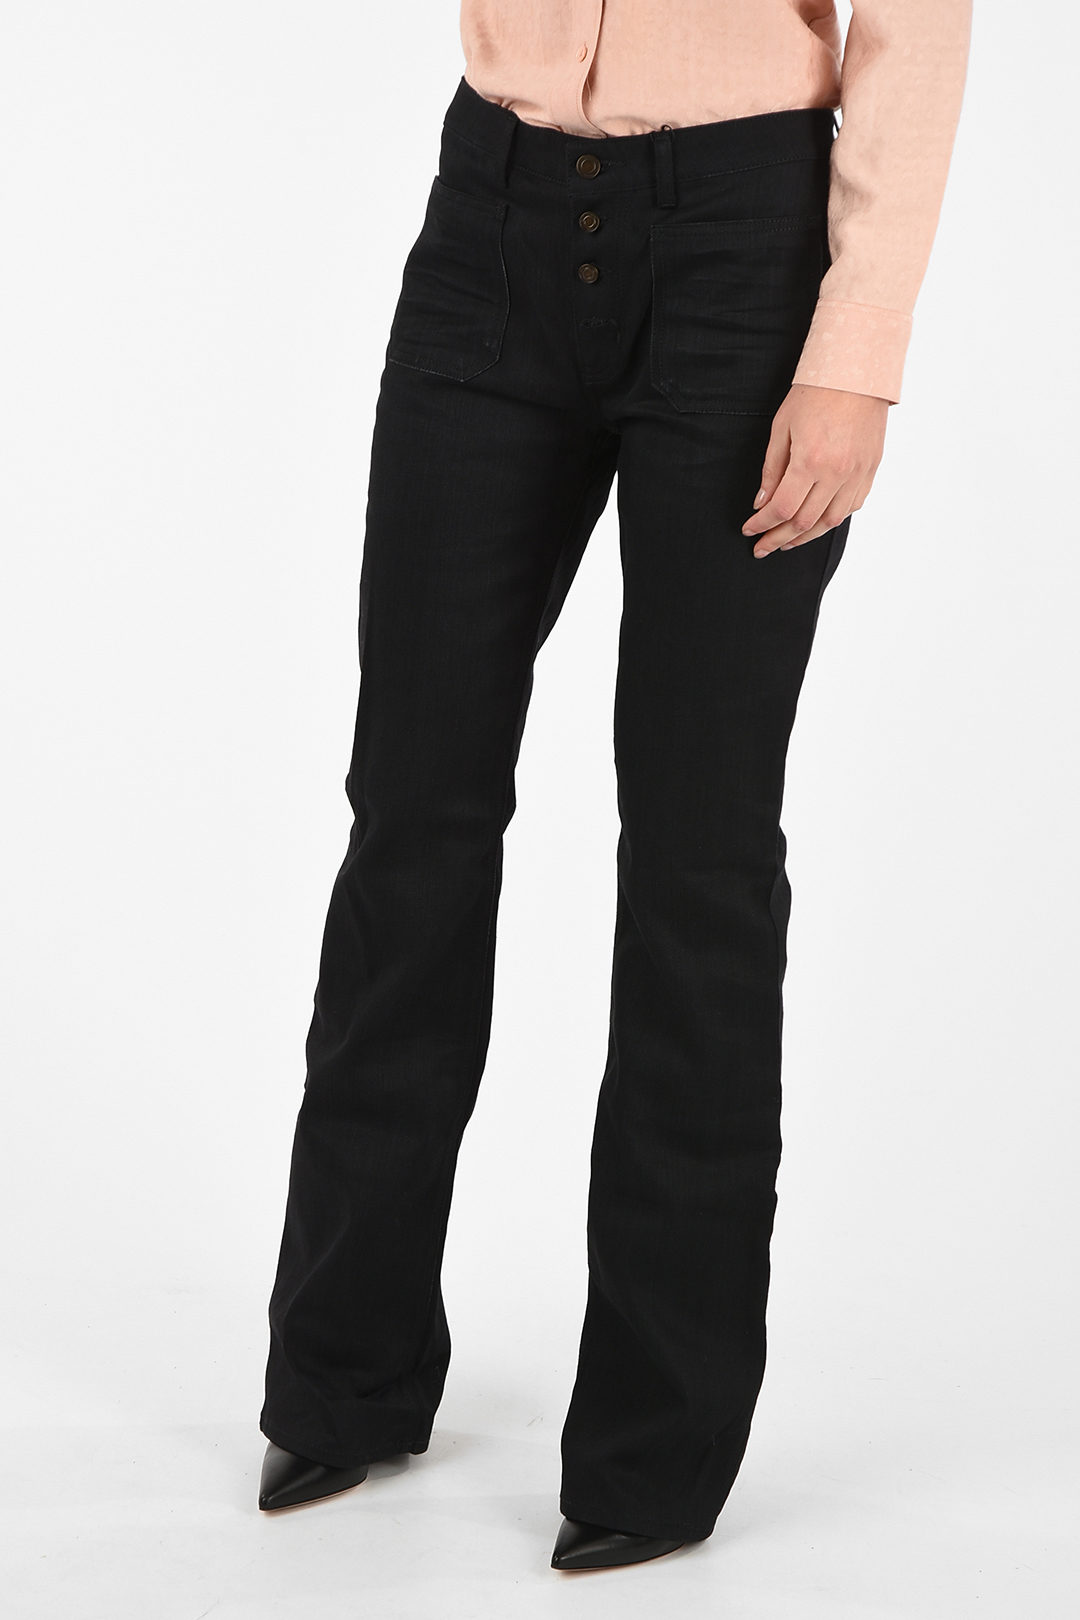 Saint Laurent high waist bootcut jeans women - Glamood Outlet